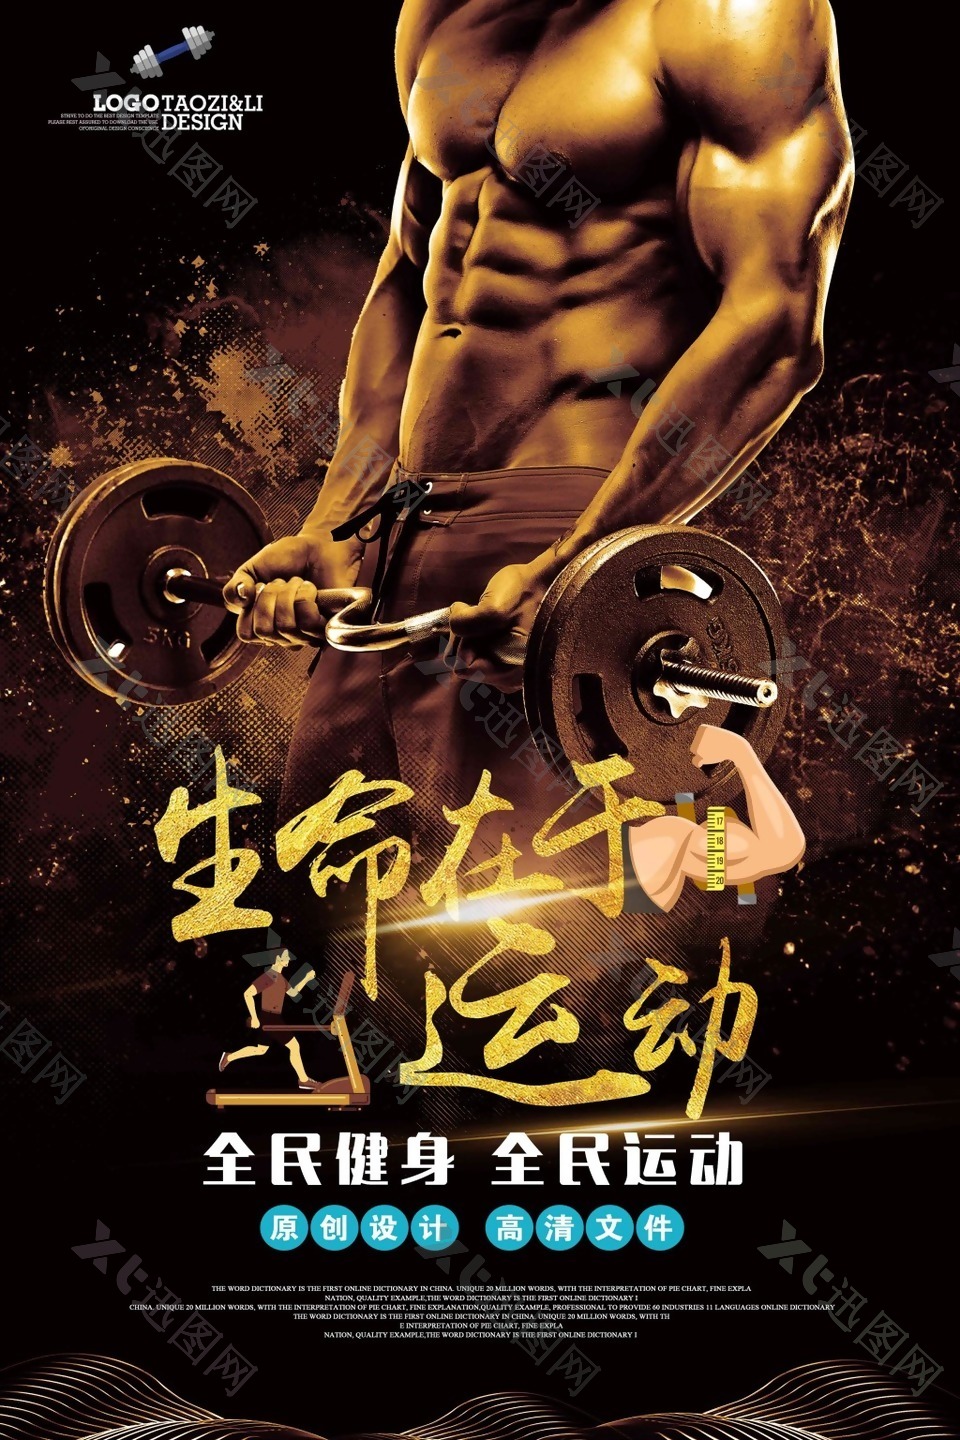 杠铃腹肌肌肉男健身海报